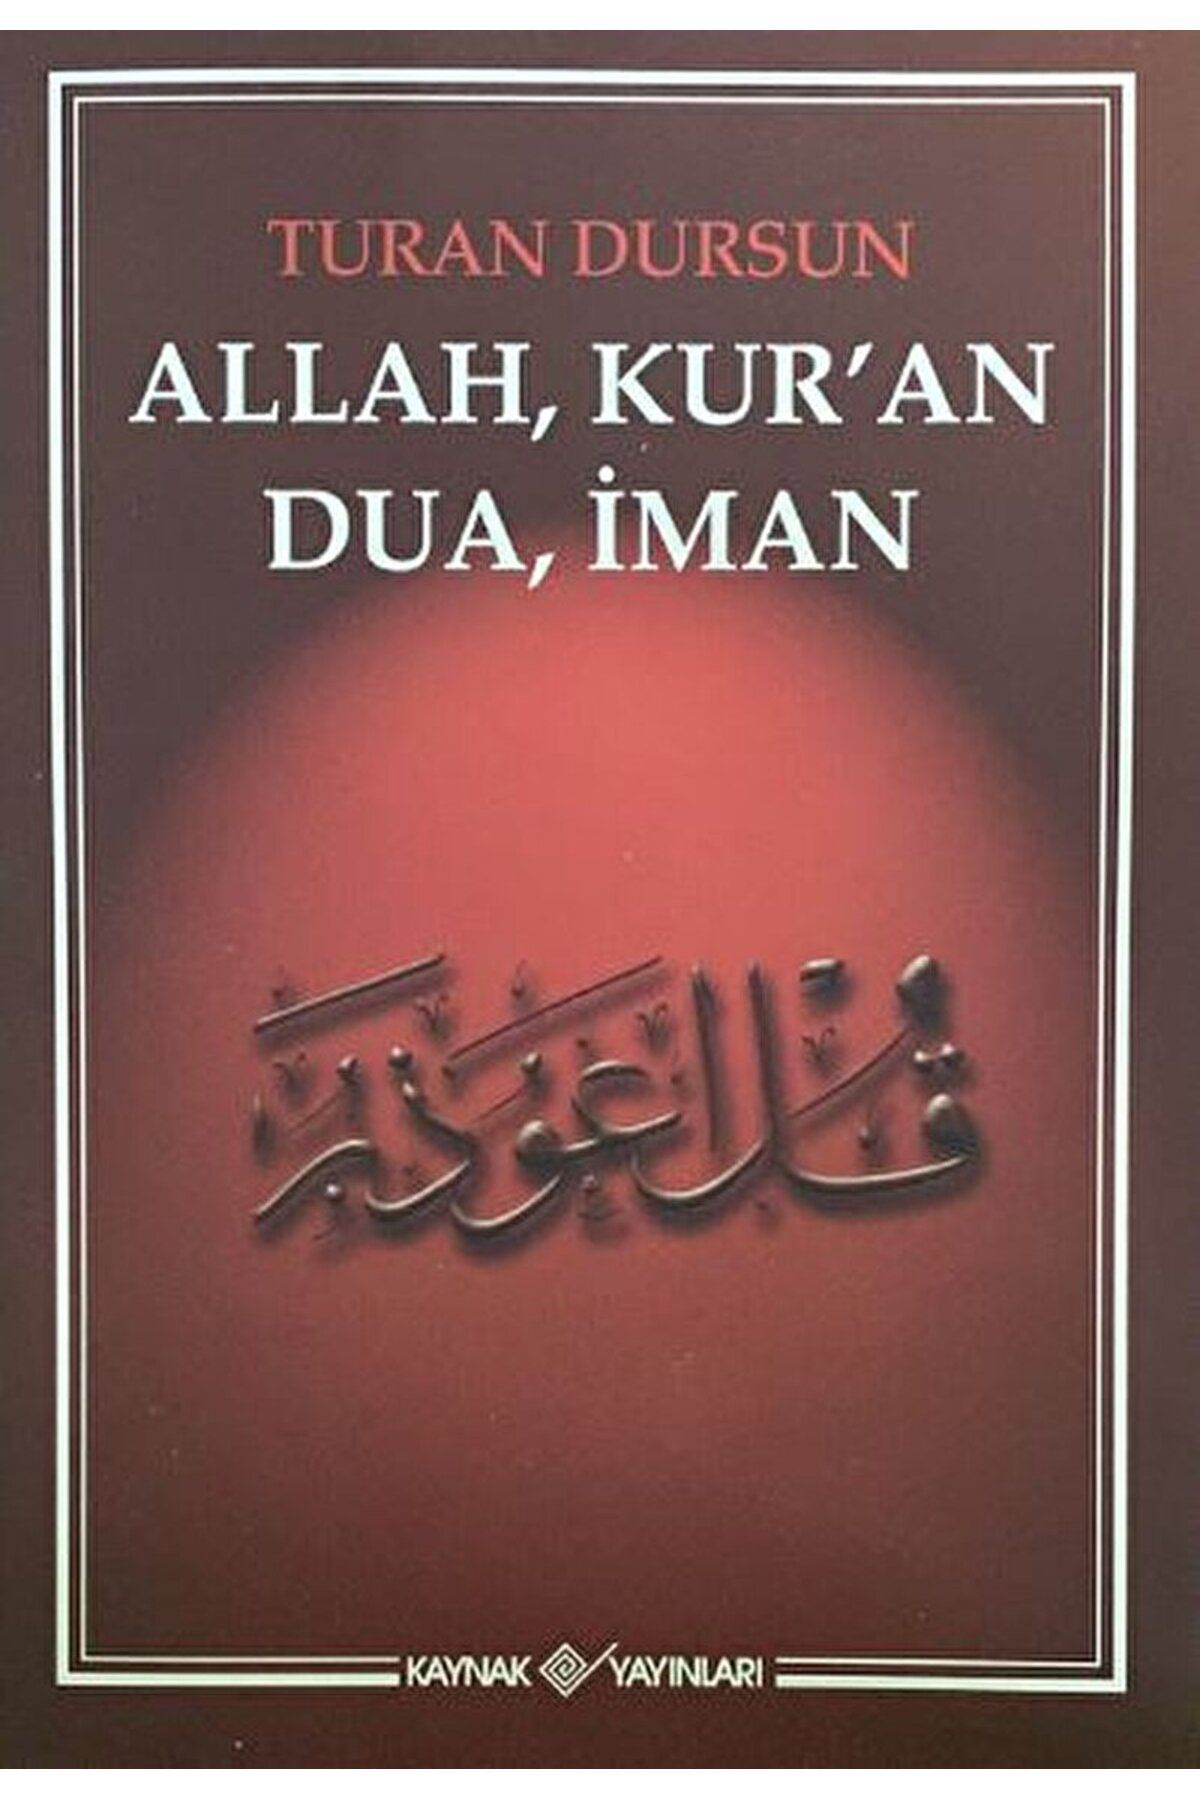 Kaynak Yayınları Allah, Kur'an, Dua, İman / Turan Dursun / Kaynak Yayınları / 9786057707857